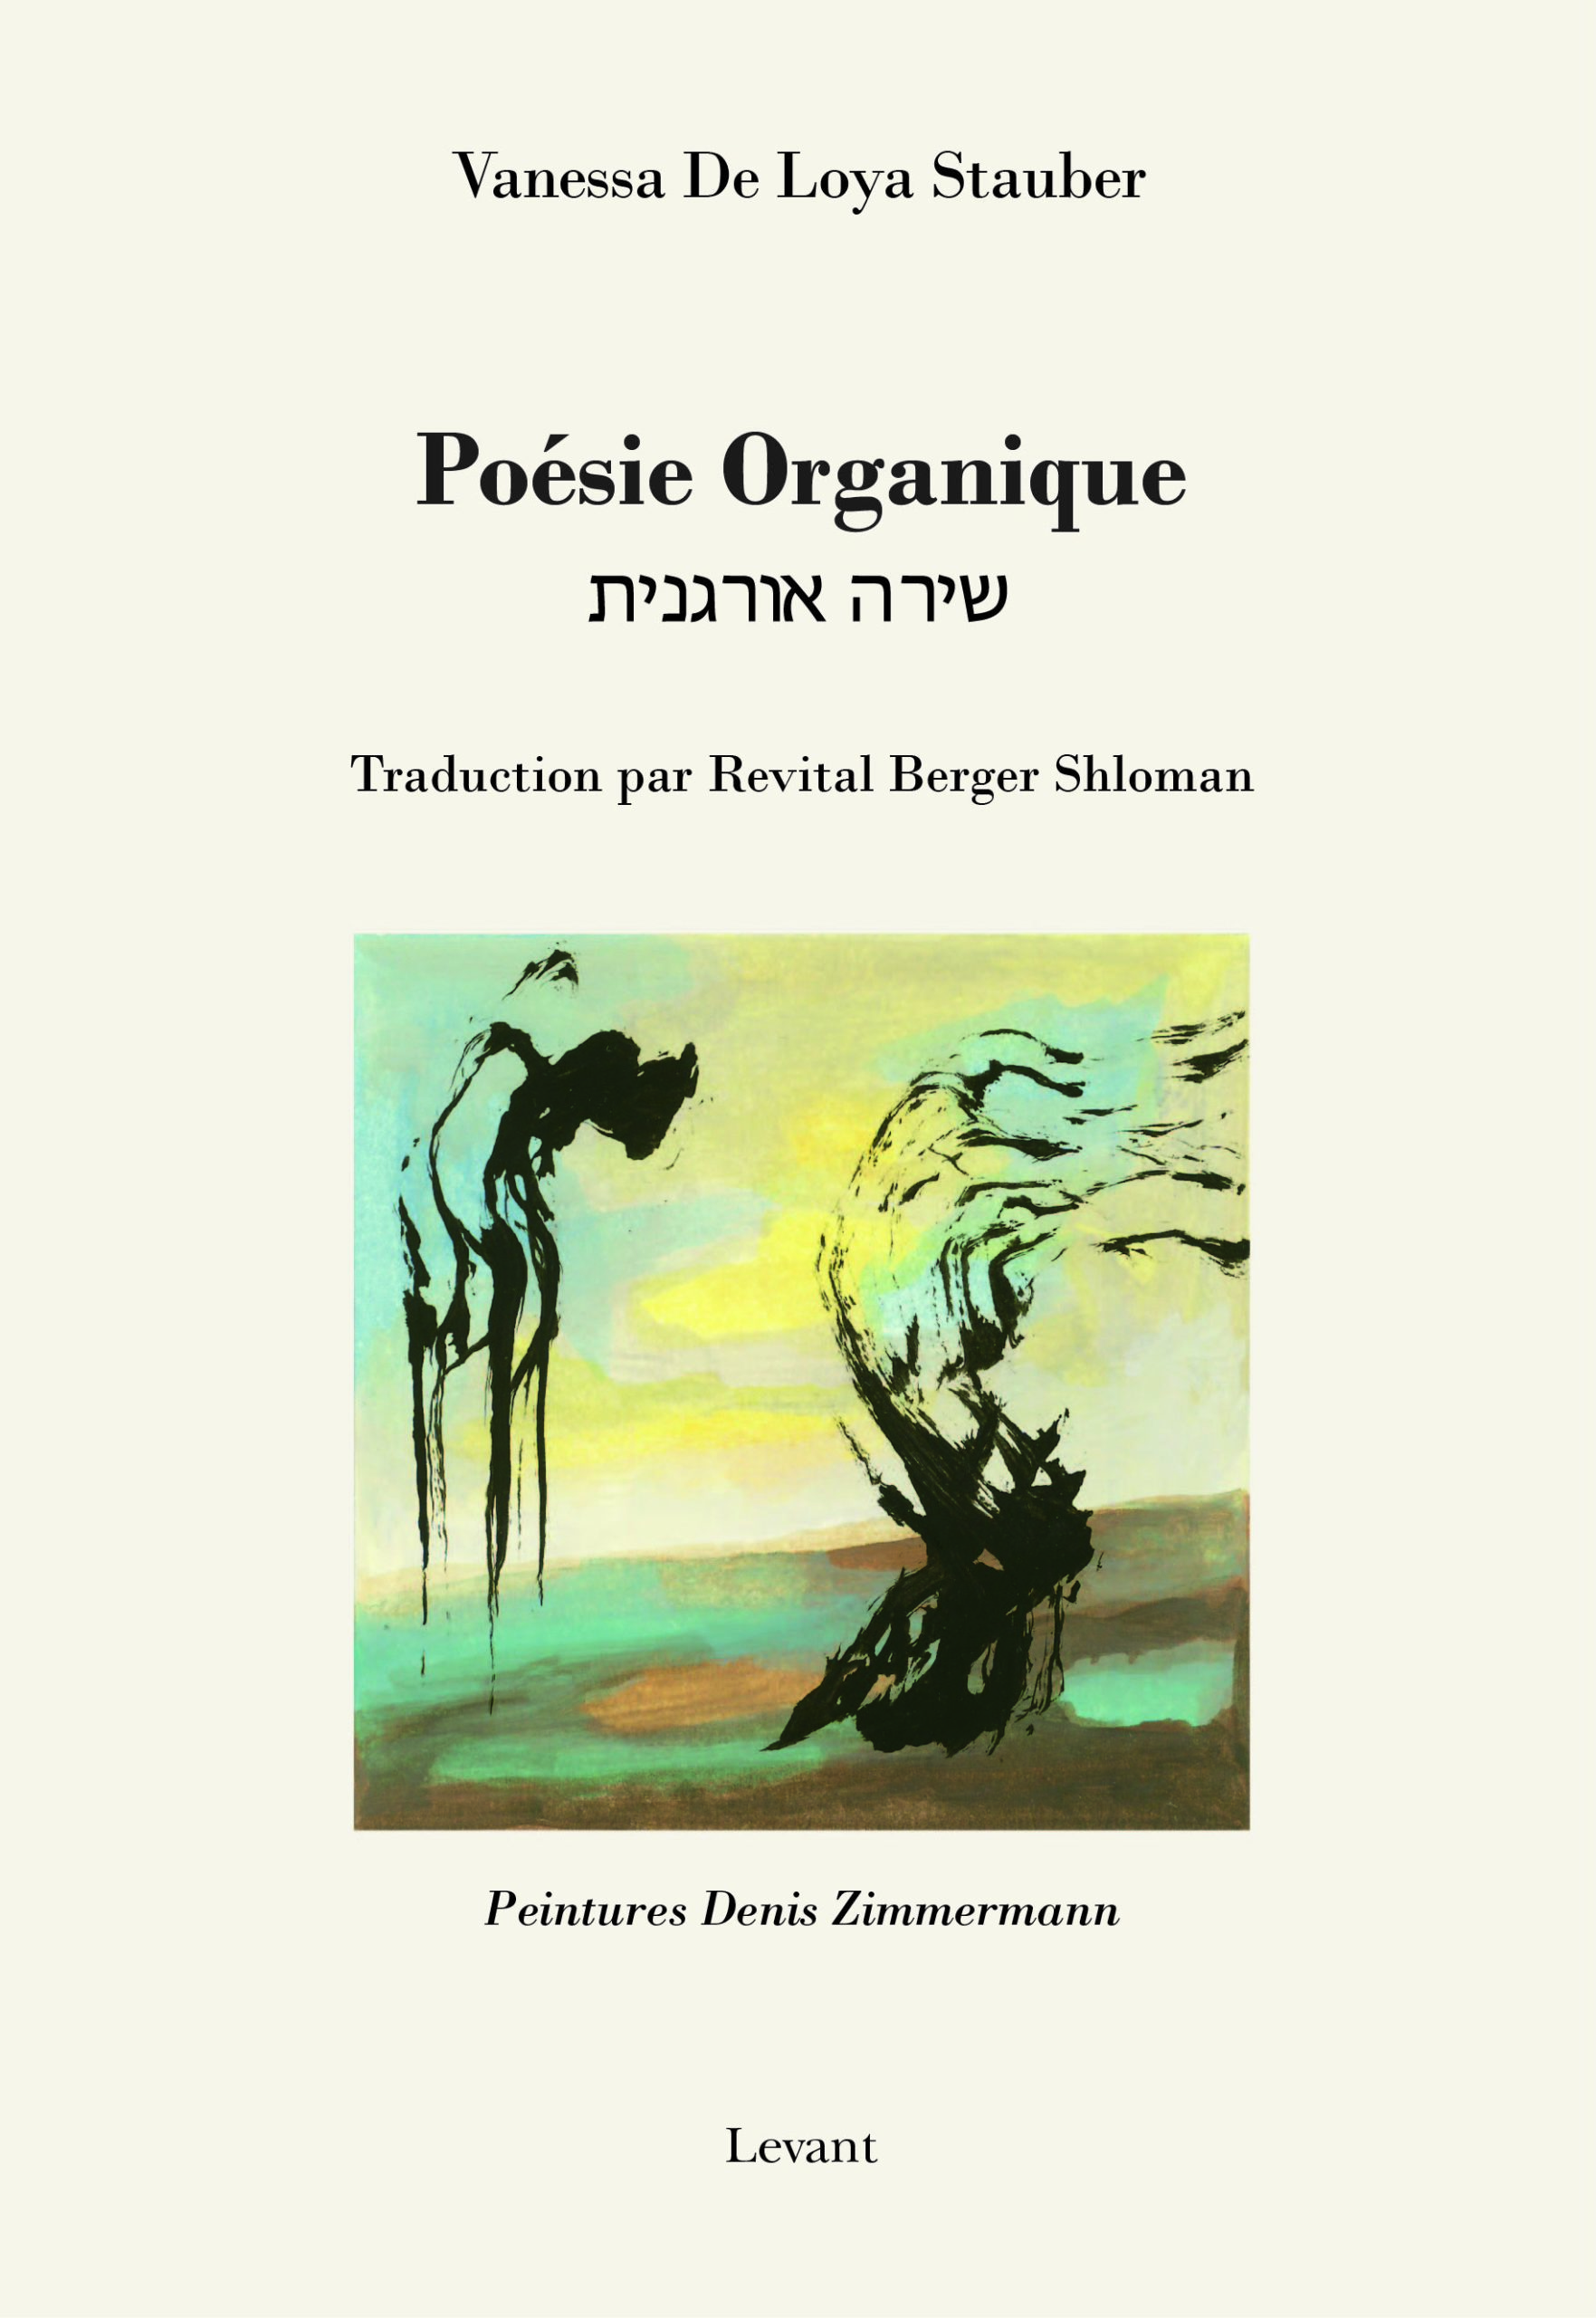 Recueil de poèmes de Pascale Goëta